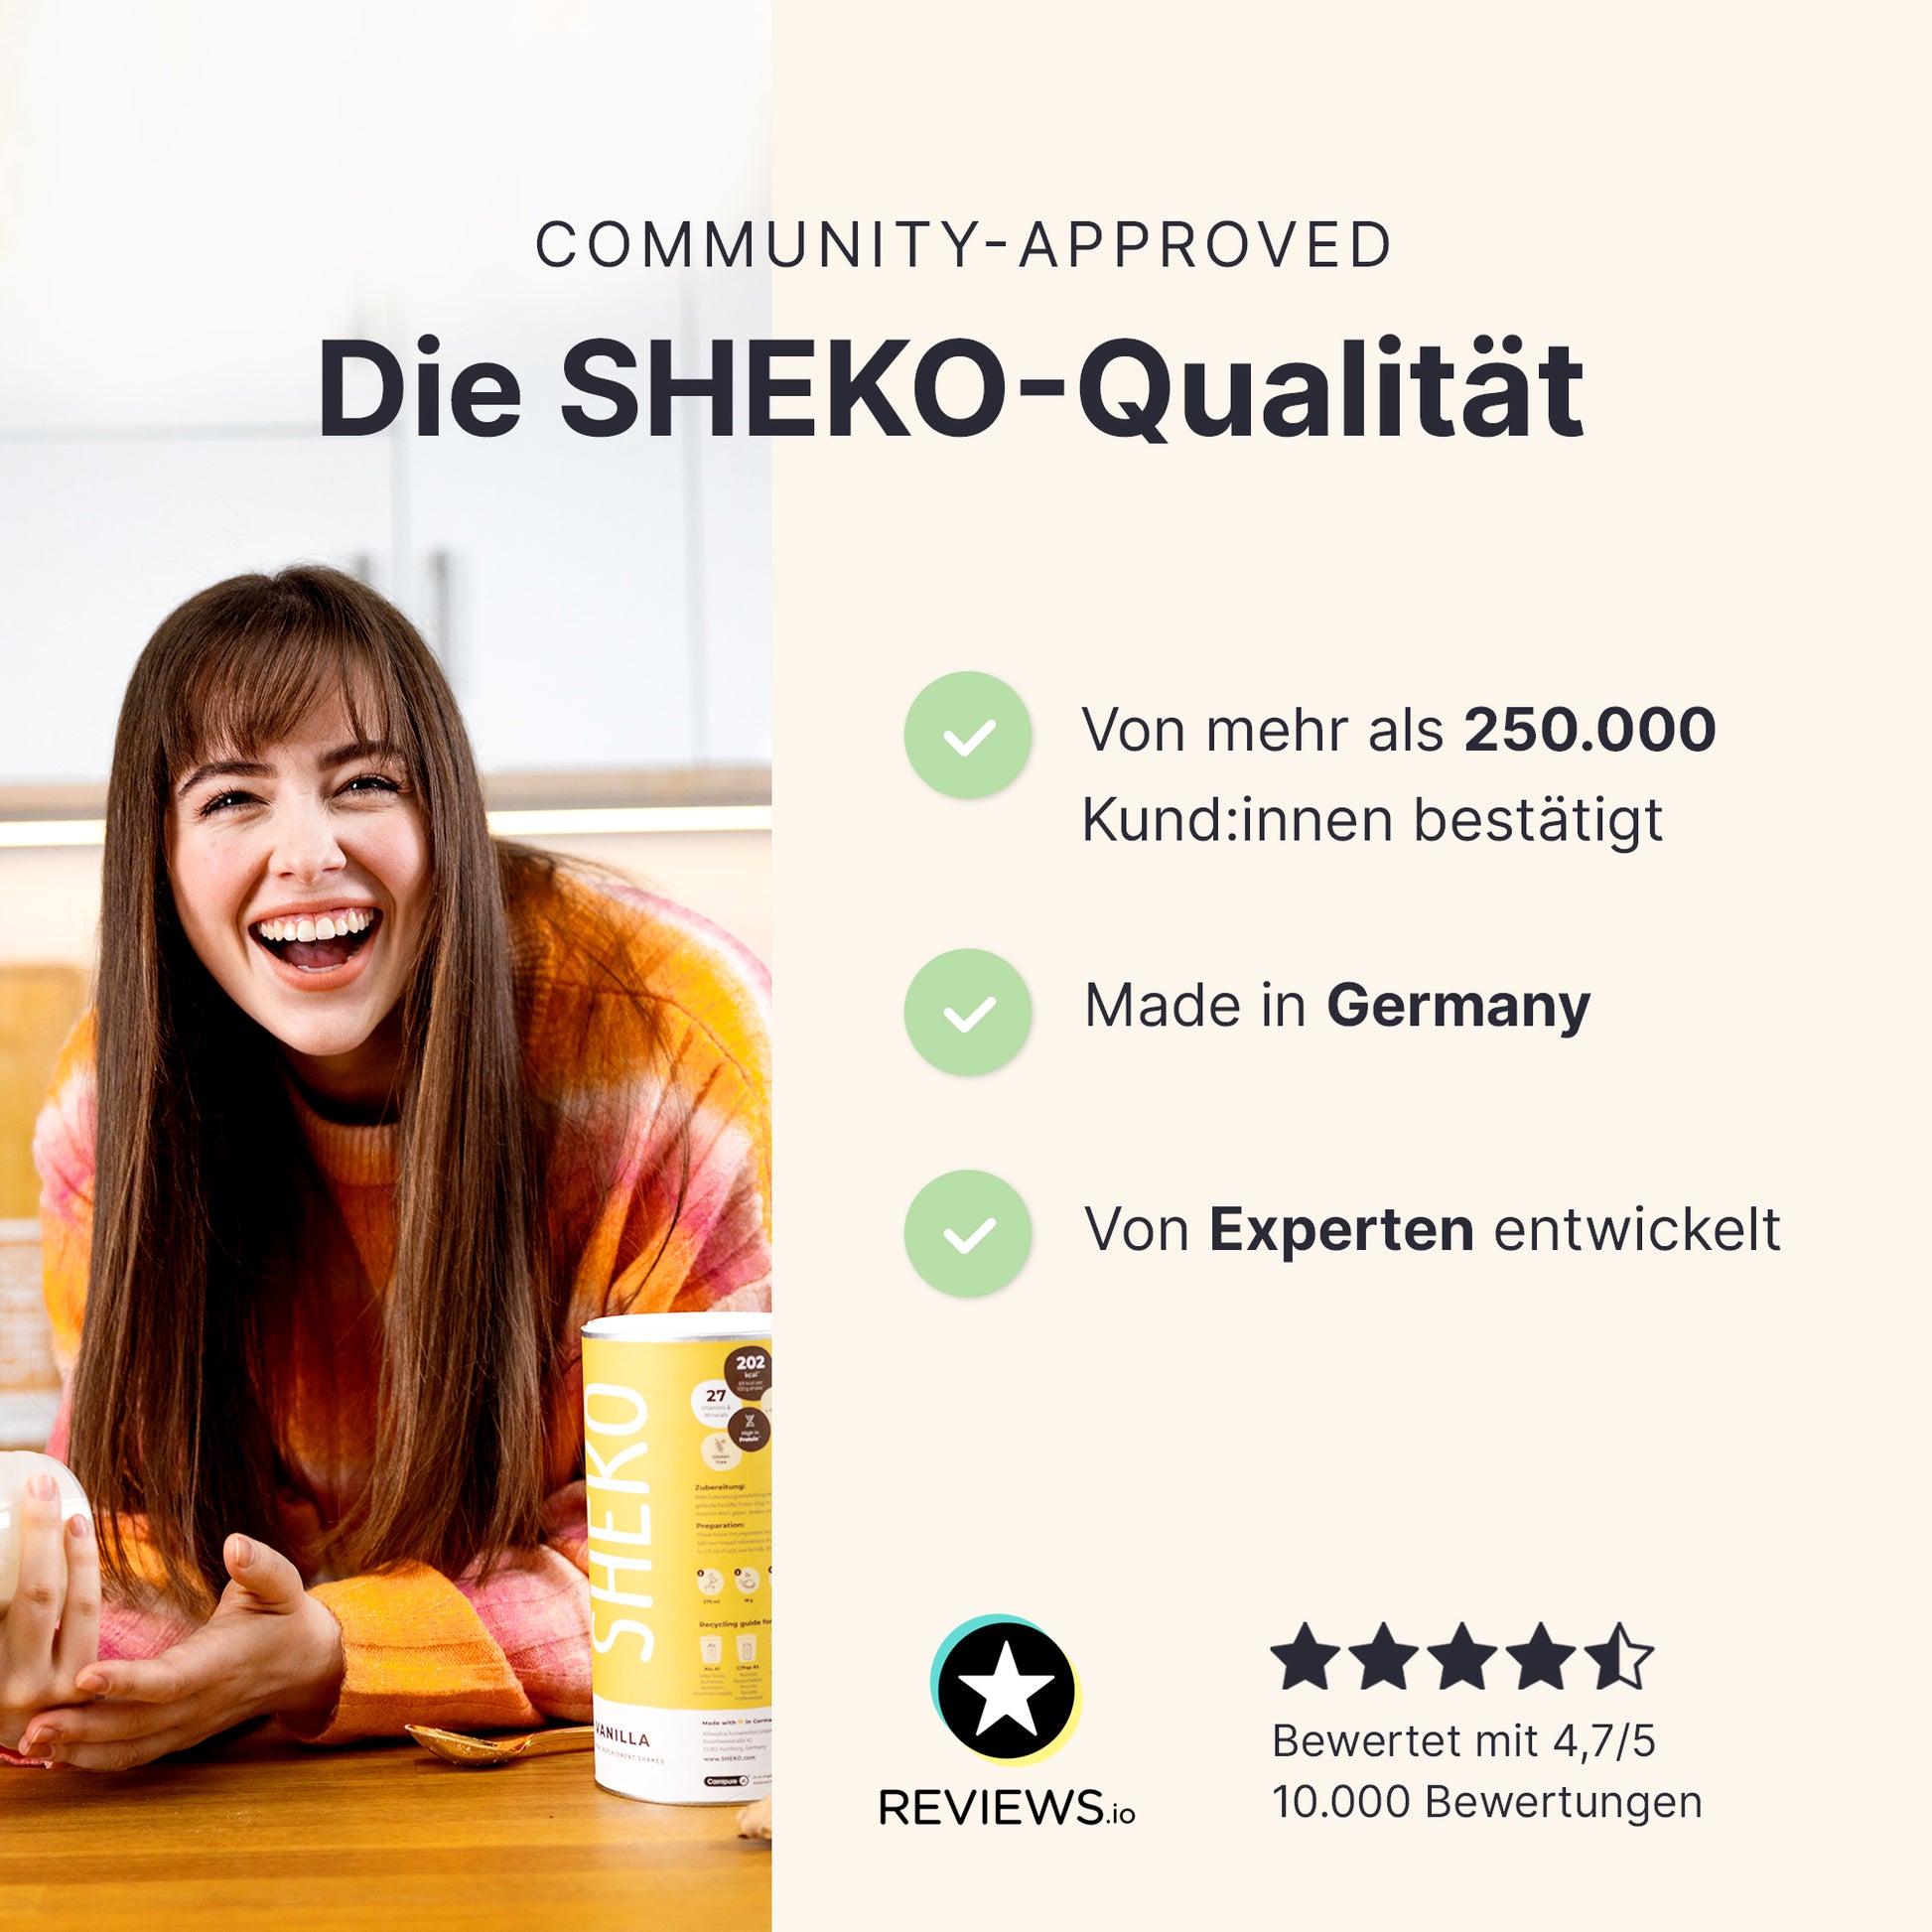 Die SHEKO-Qualität